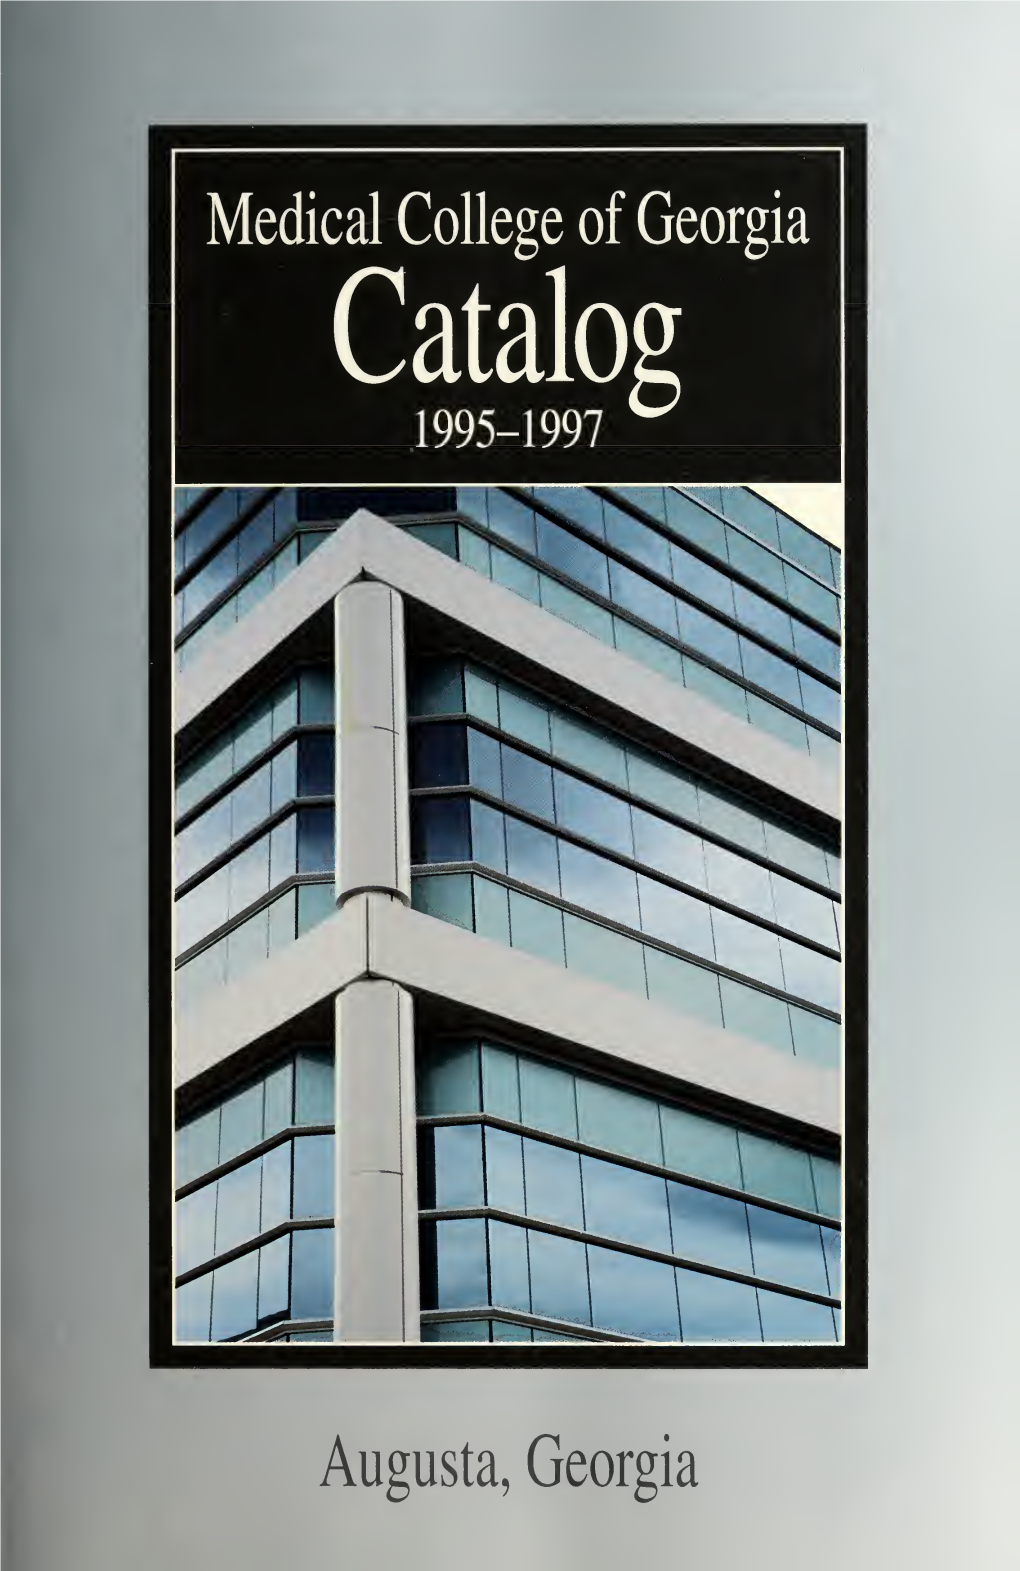 Medical College of Georgia Catalog, 1995-1997